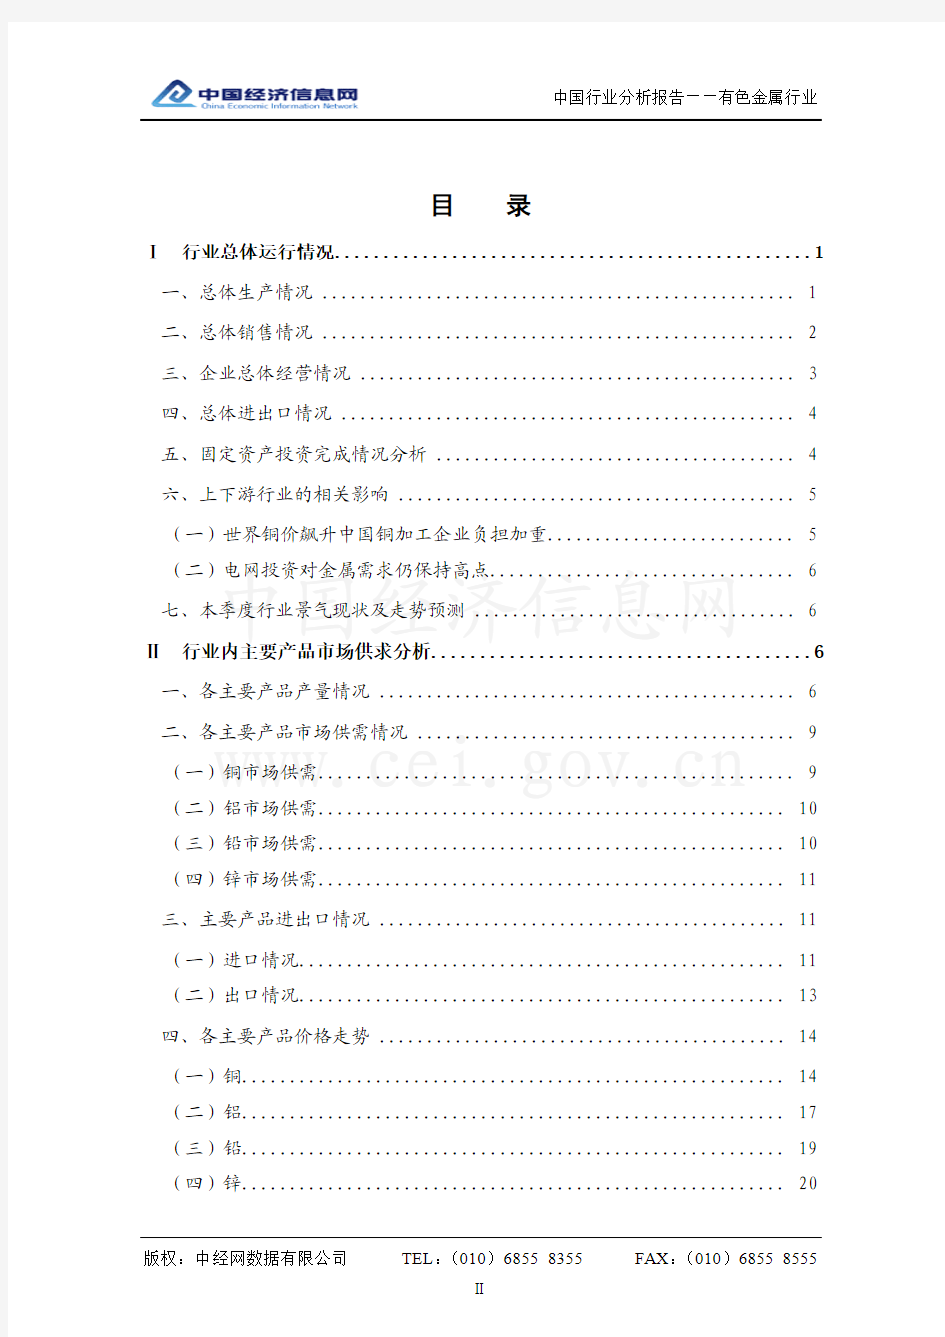 中国有色金属行业分析报告(2011年1季度)